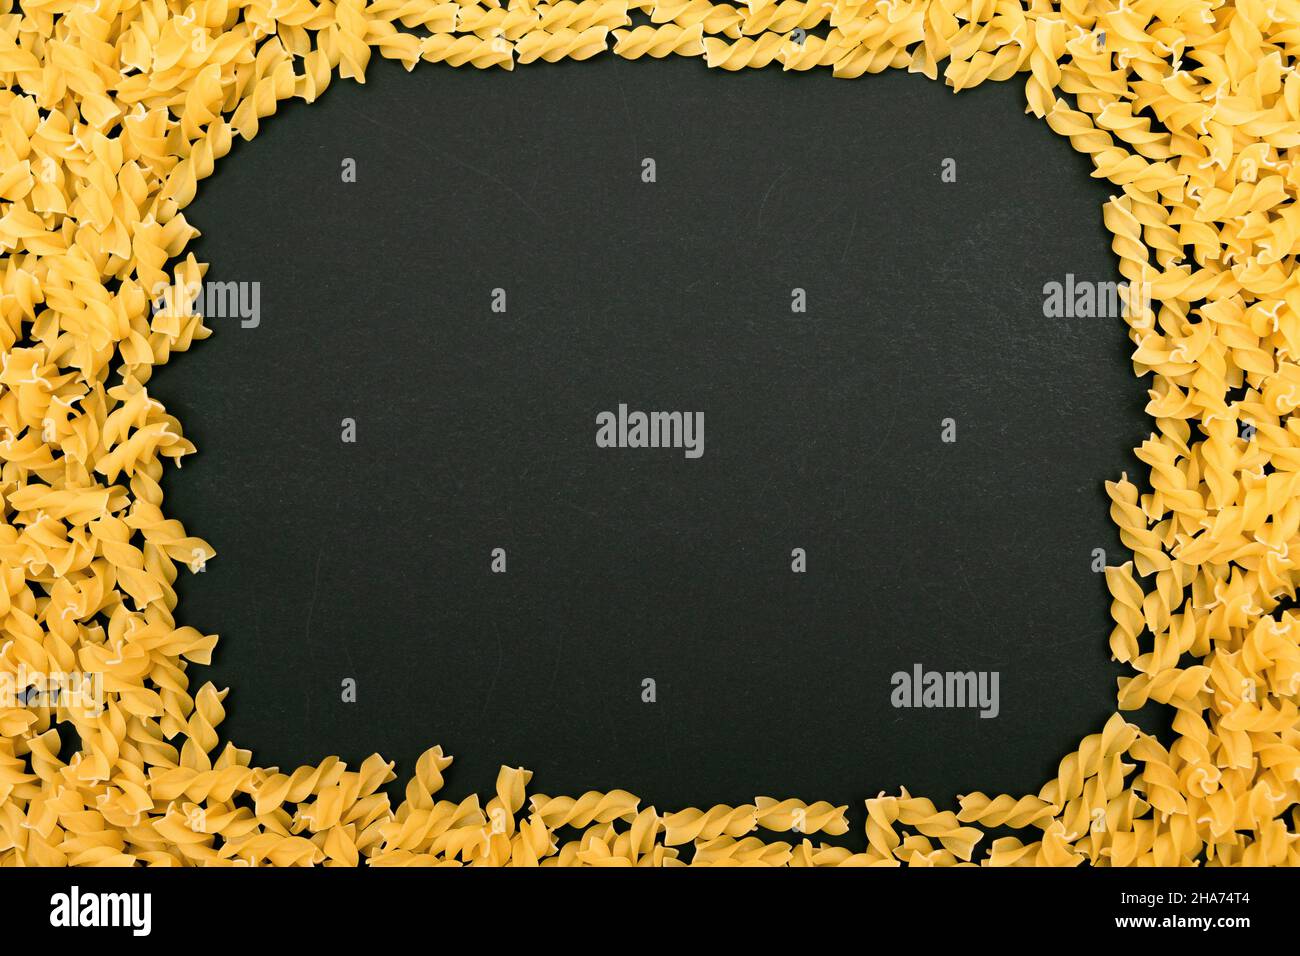 Un cadre fait de pâtes Fusilli non cuites éparpillées sur une table noire - maquette.Macaroni cru et sec.Aliments malsains et gras.Culture italienne Banque D'Images